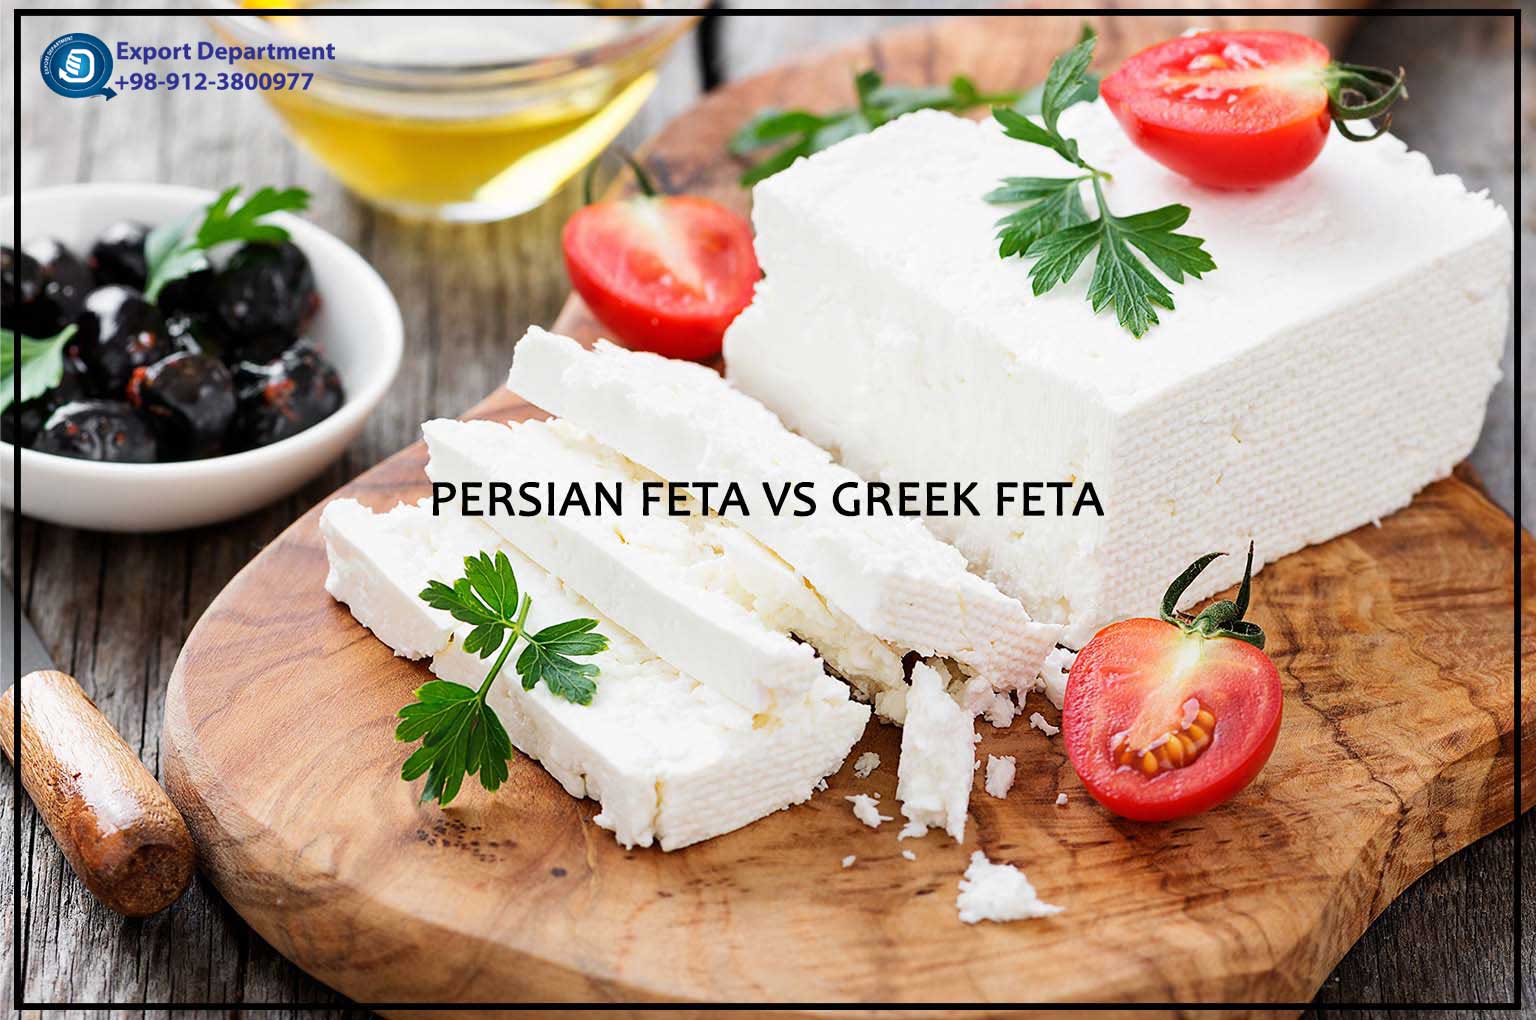 Персидская фета против греческого сыра фета